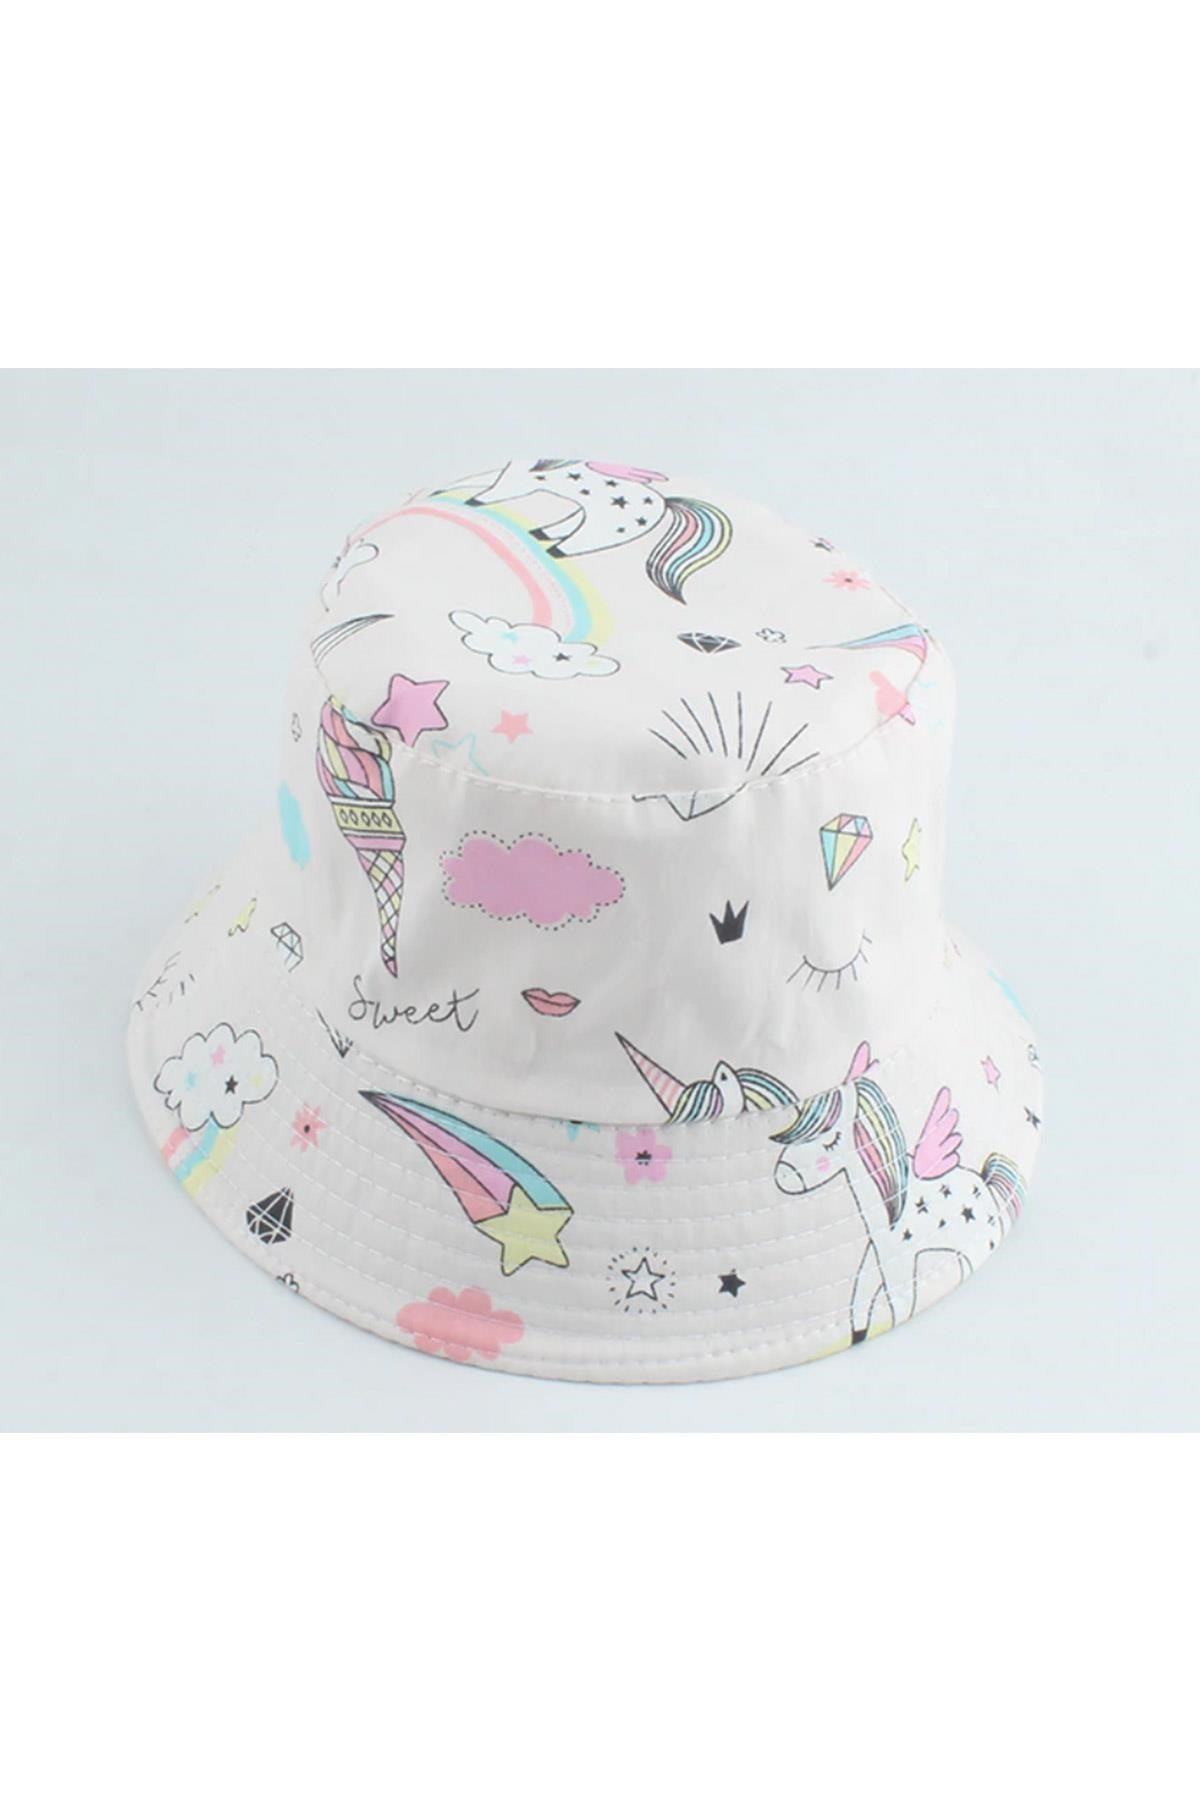 Petityu Unicorn Kemik Rengi Bucket Yazlık Şapka 2- 5 Yaş